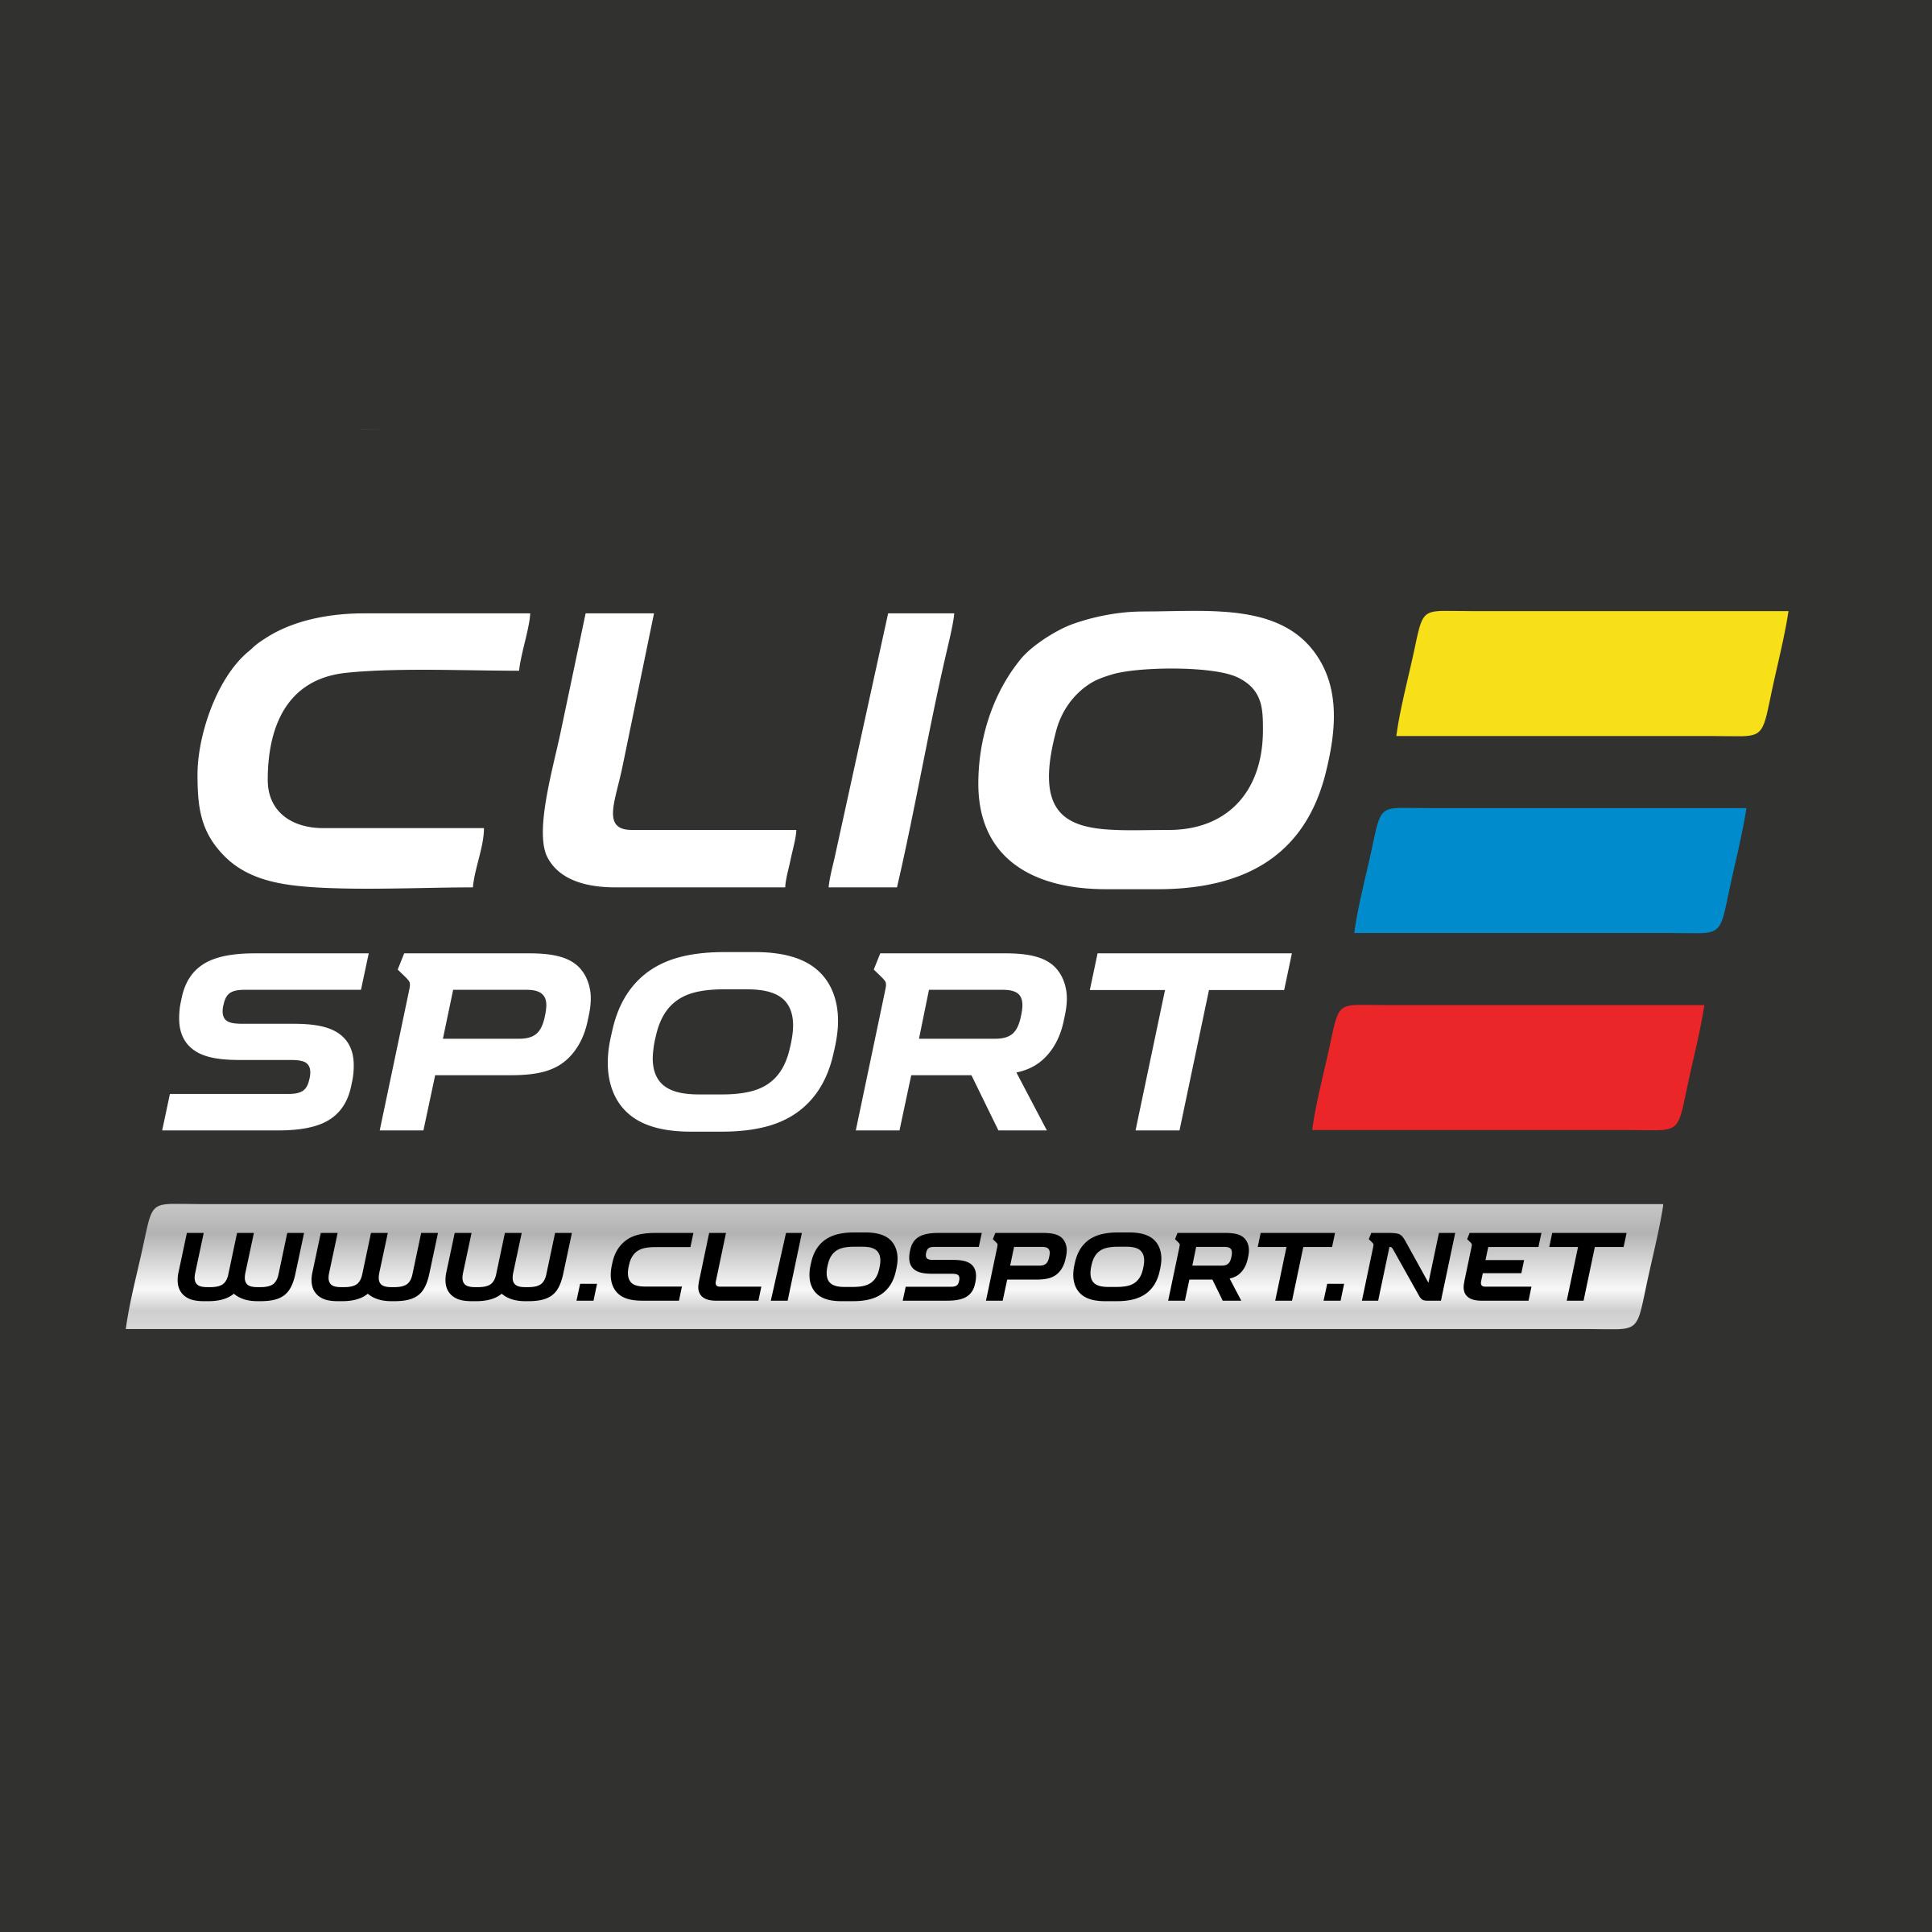 www.cliosport.net